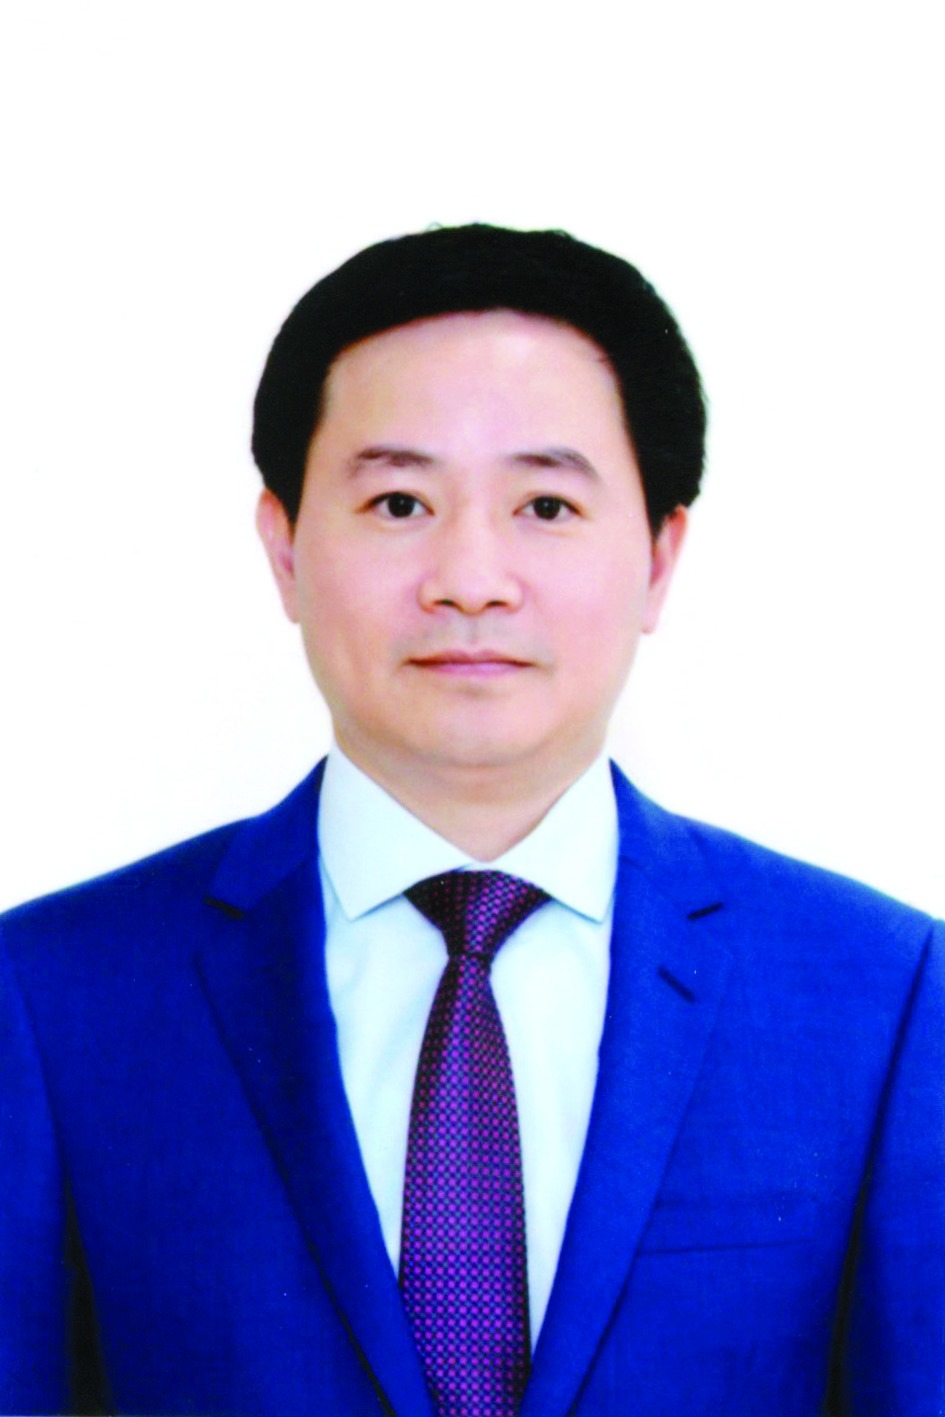 Chương trình hành động của Chánh văn phòng Thành ủy Hà Nội Trần Anh Tuấn, ứng cử viên đại biểu HĐND TP Hà Nội nhiệm kỳ 2021 - 2026 - Ảnh 1